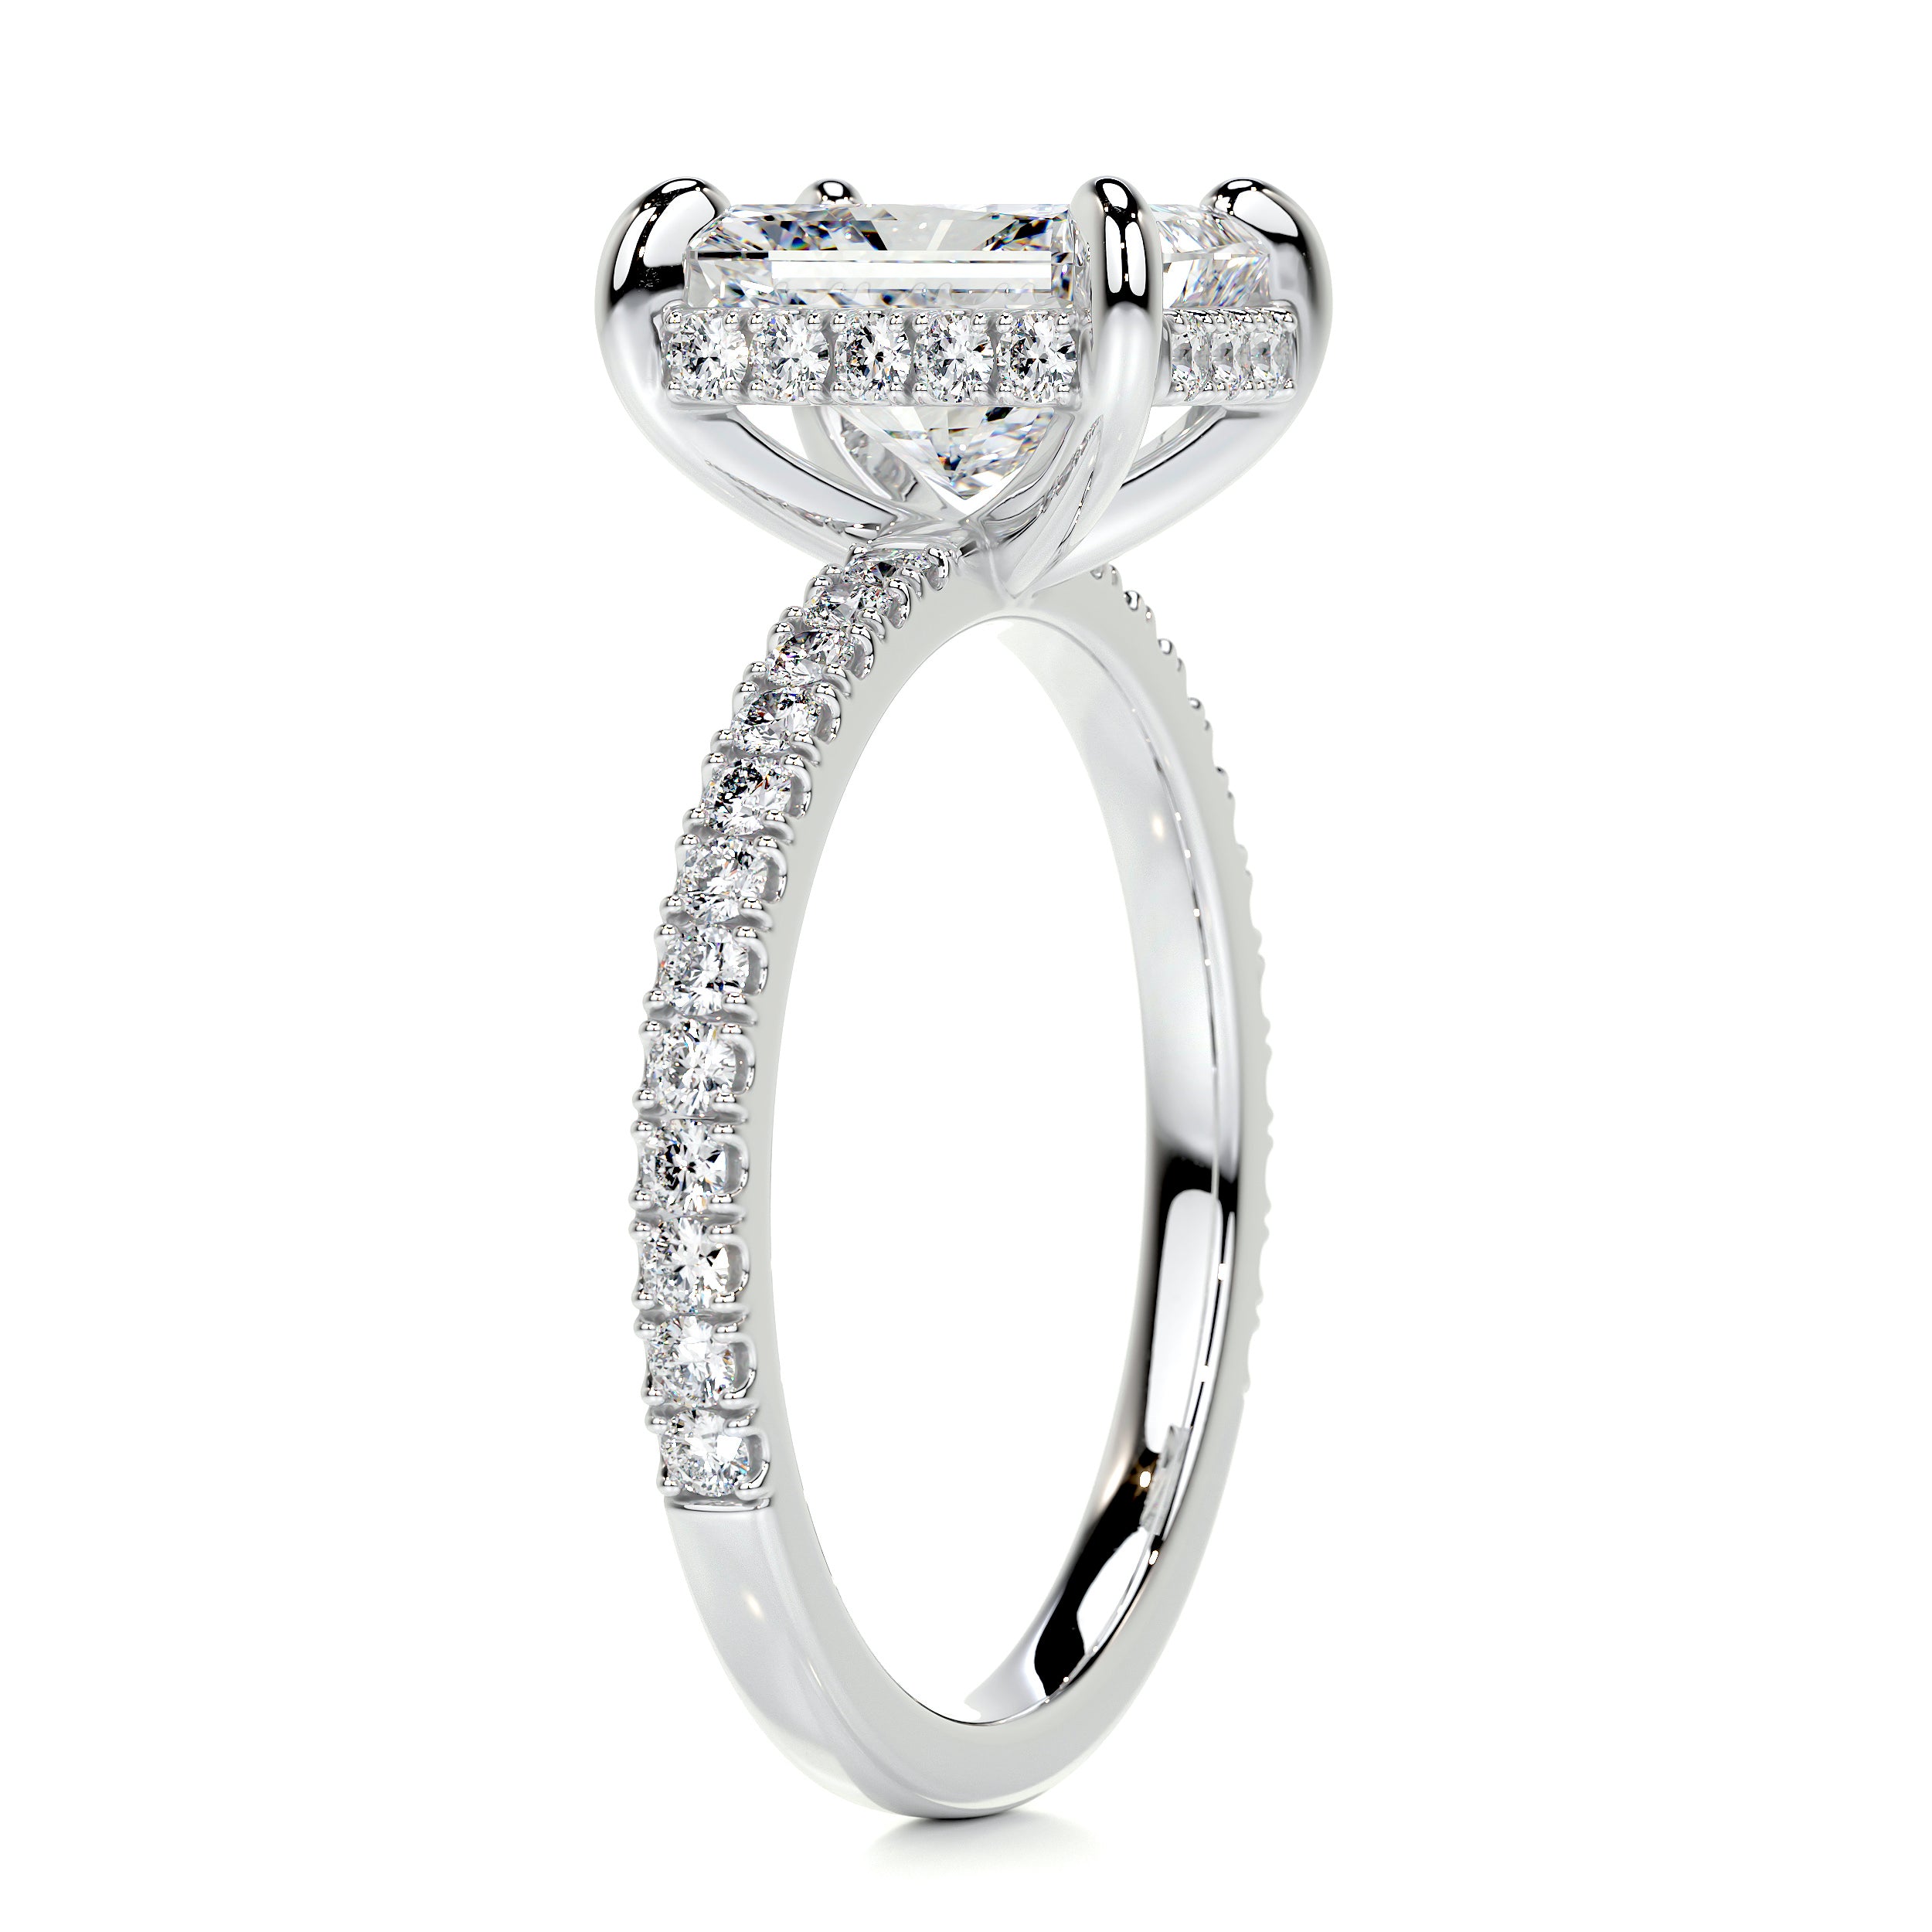 Luna Diamond Engagement Ring   (2 Carat) -14K White Gold